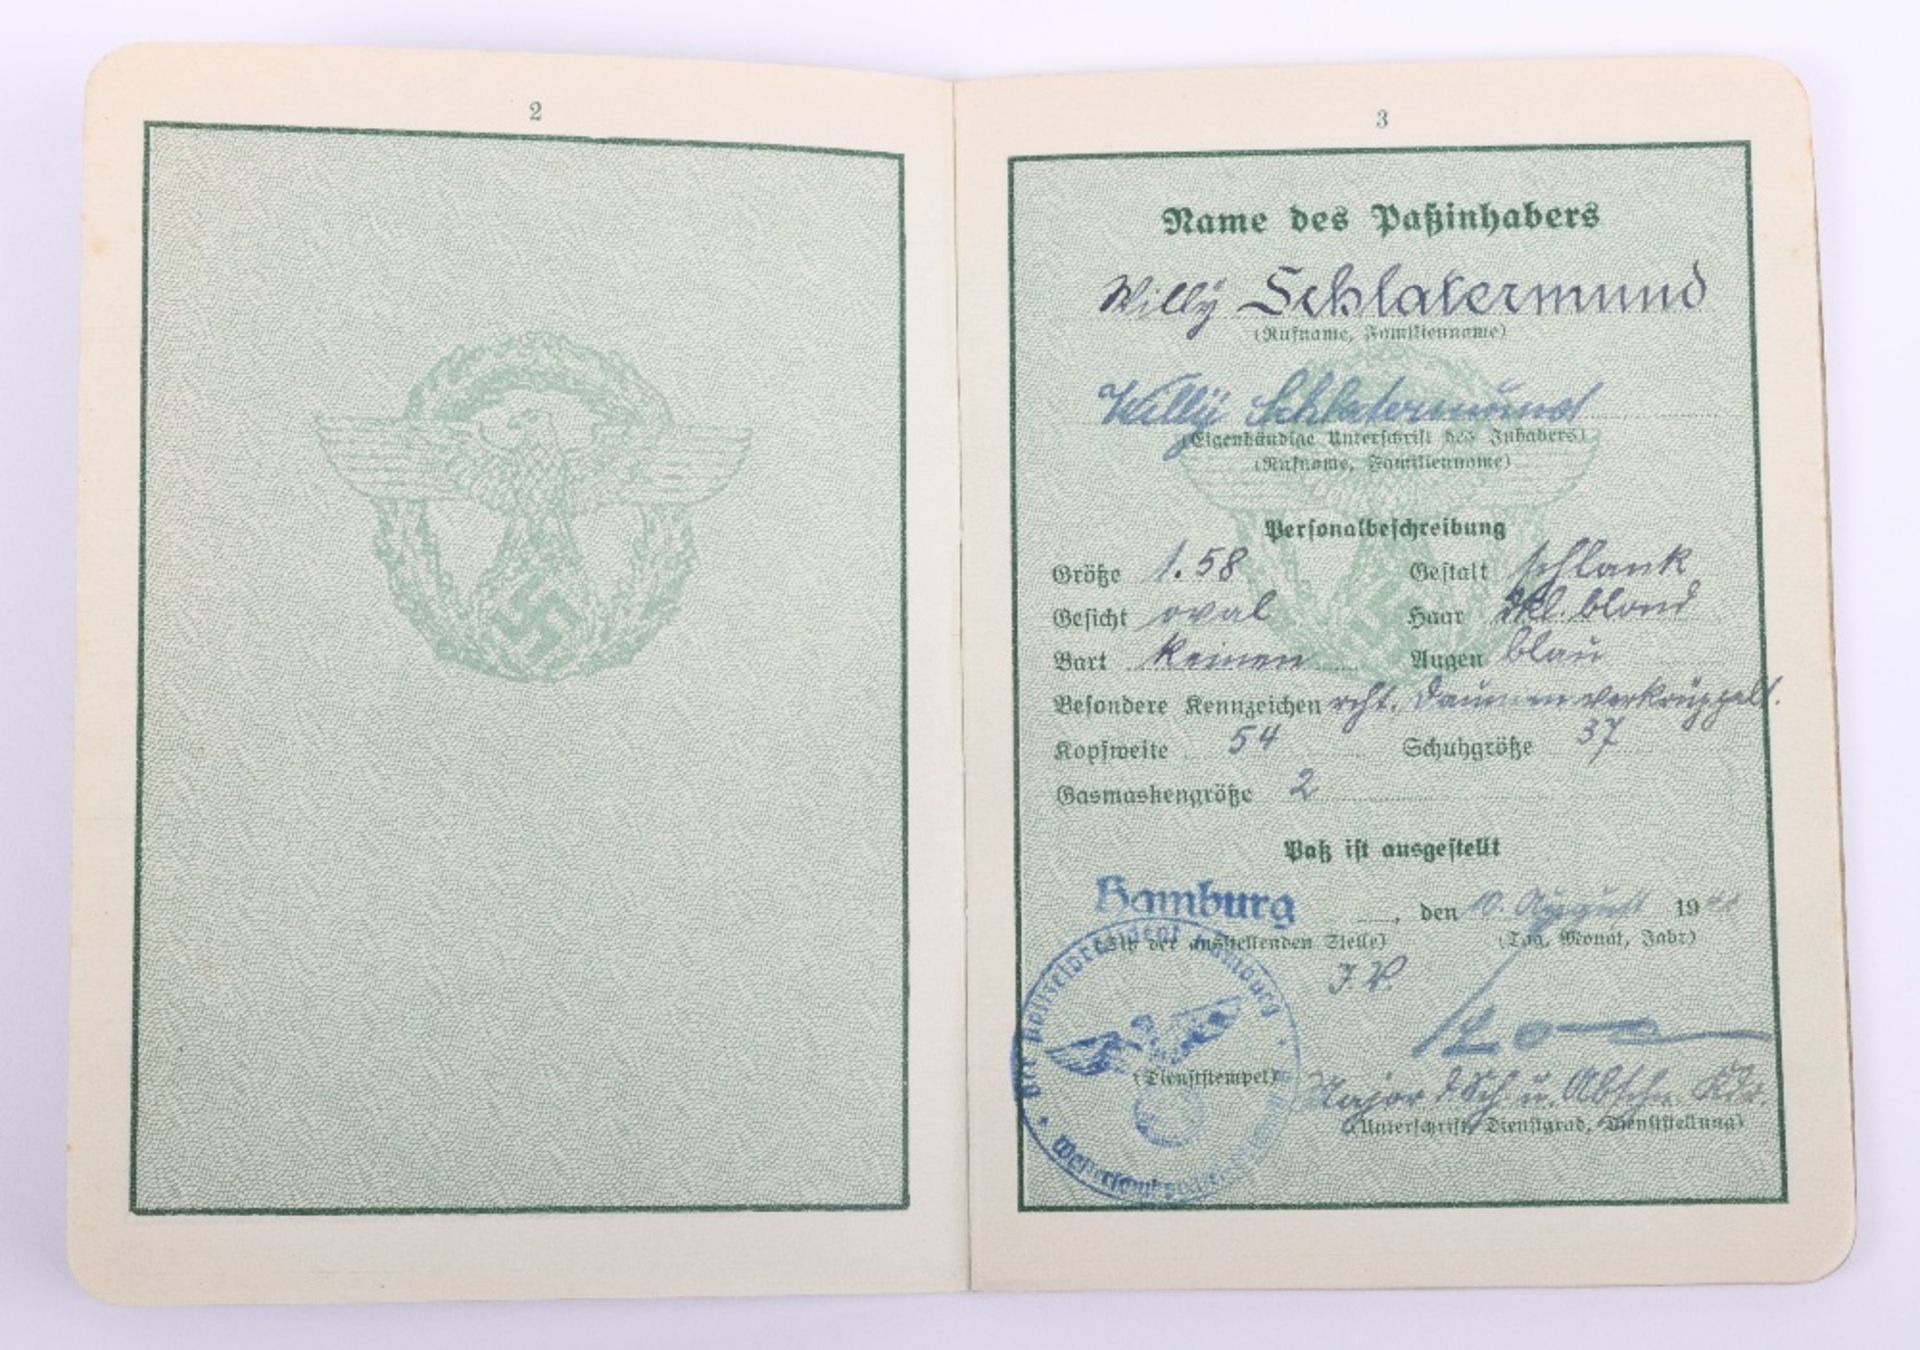 WW2 German Police service book / Polizei Dienstpass to Willy Schlatermund, Polizei Reserve Hamburg 1 - Image 4 of 10